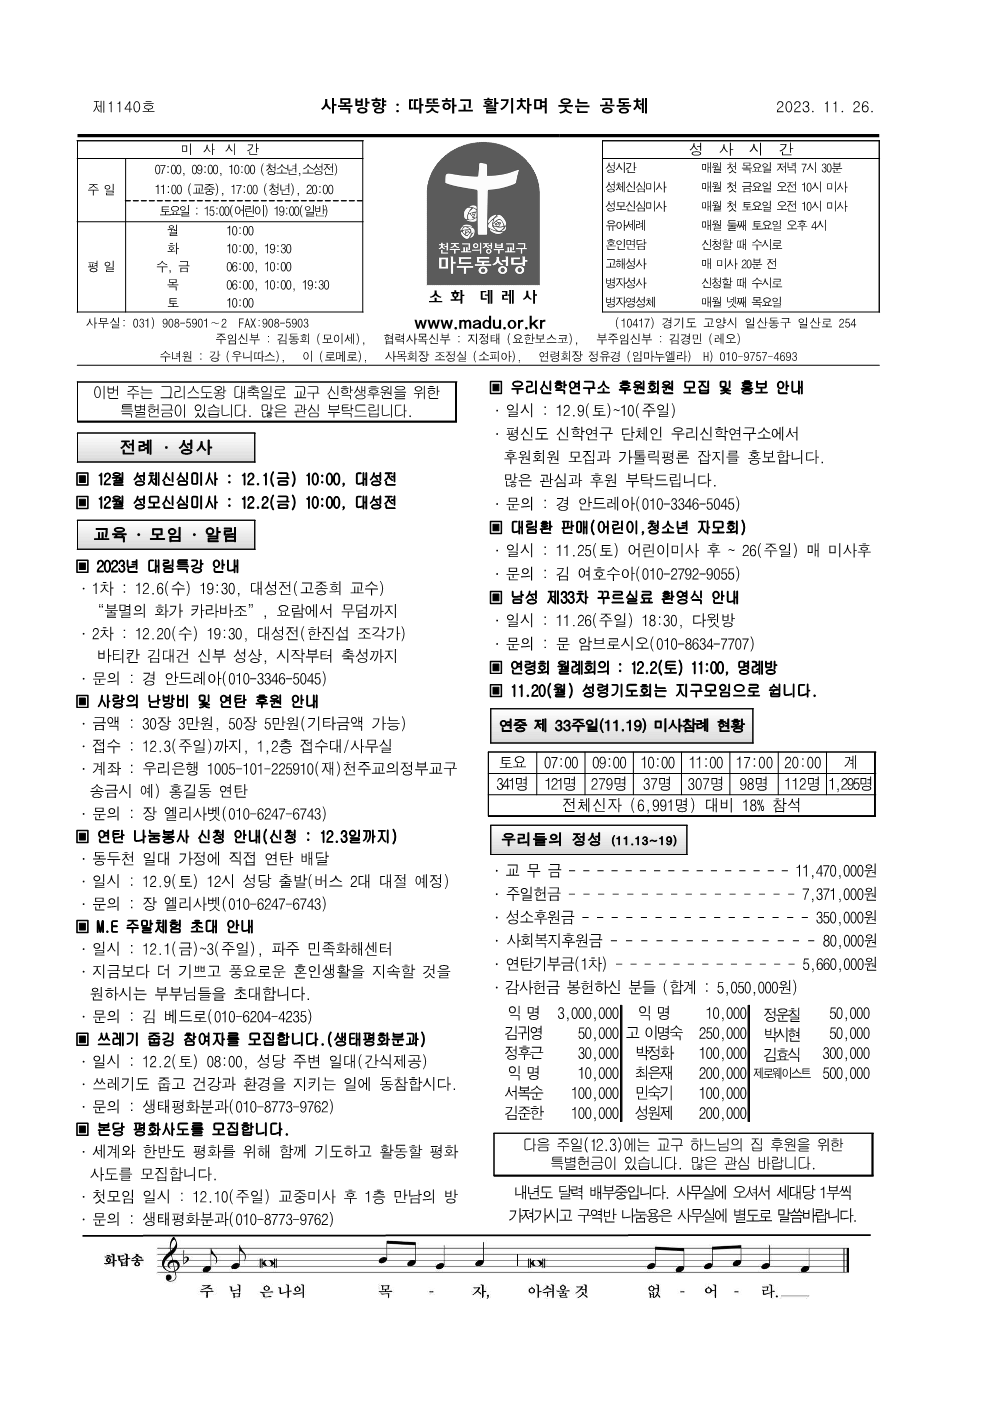 마두23-11-26주보(수정)_1.png